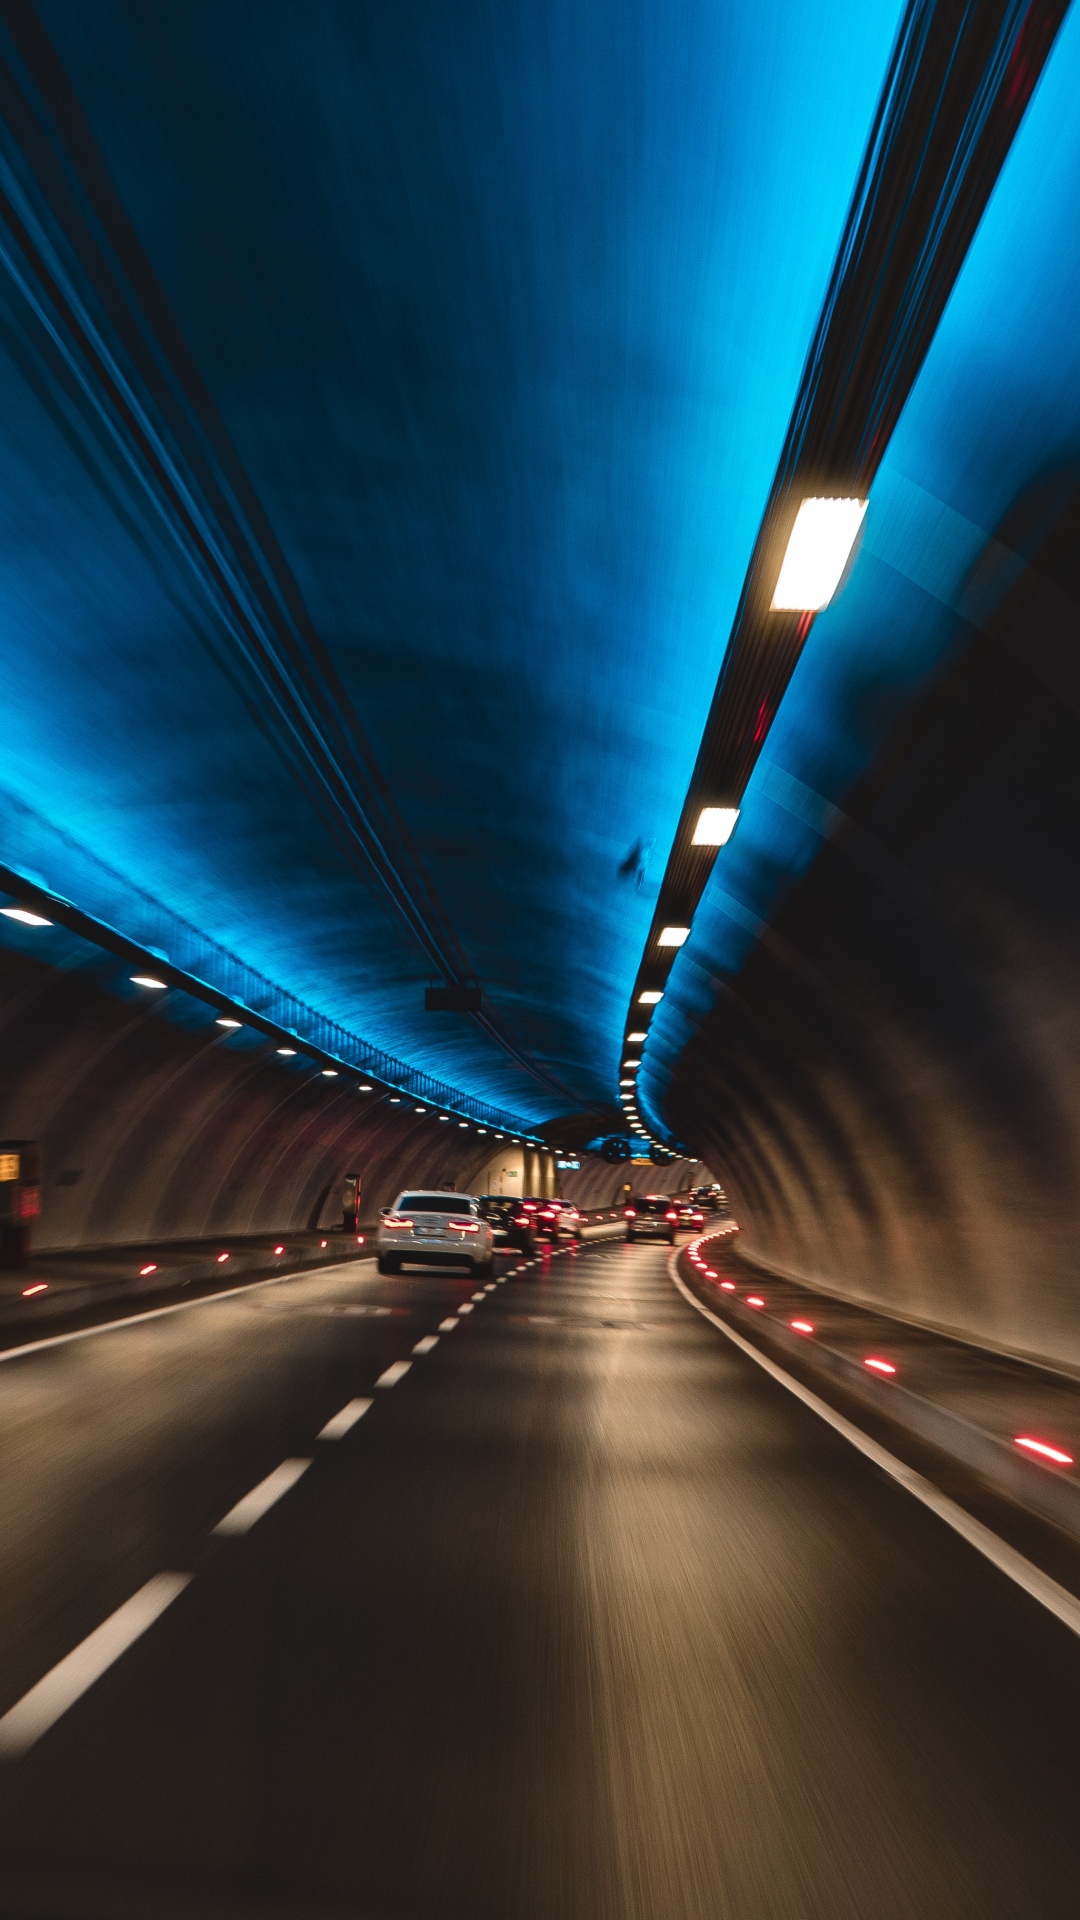 Lumière Bleue Dans le Tunnel Pendant la Nuit. Wallpaper in 1080x1920 Resolution